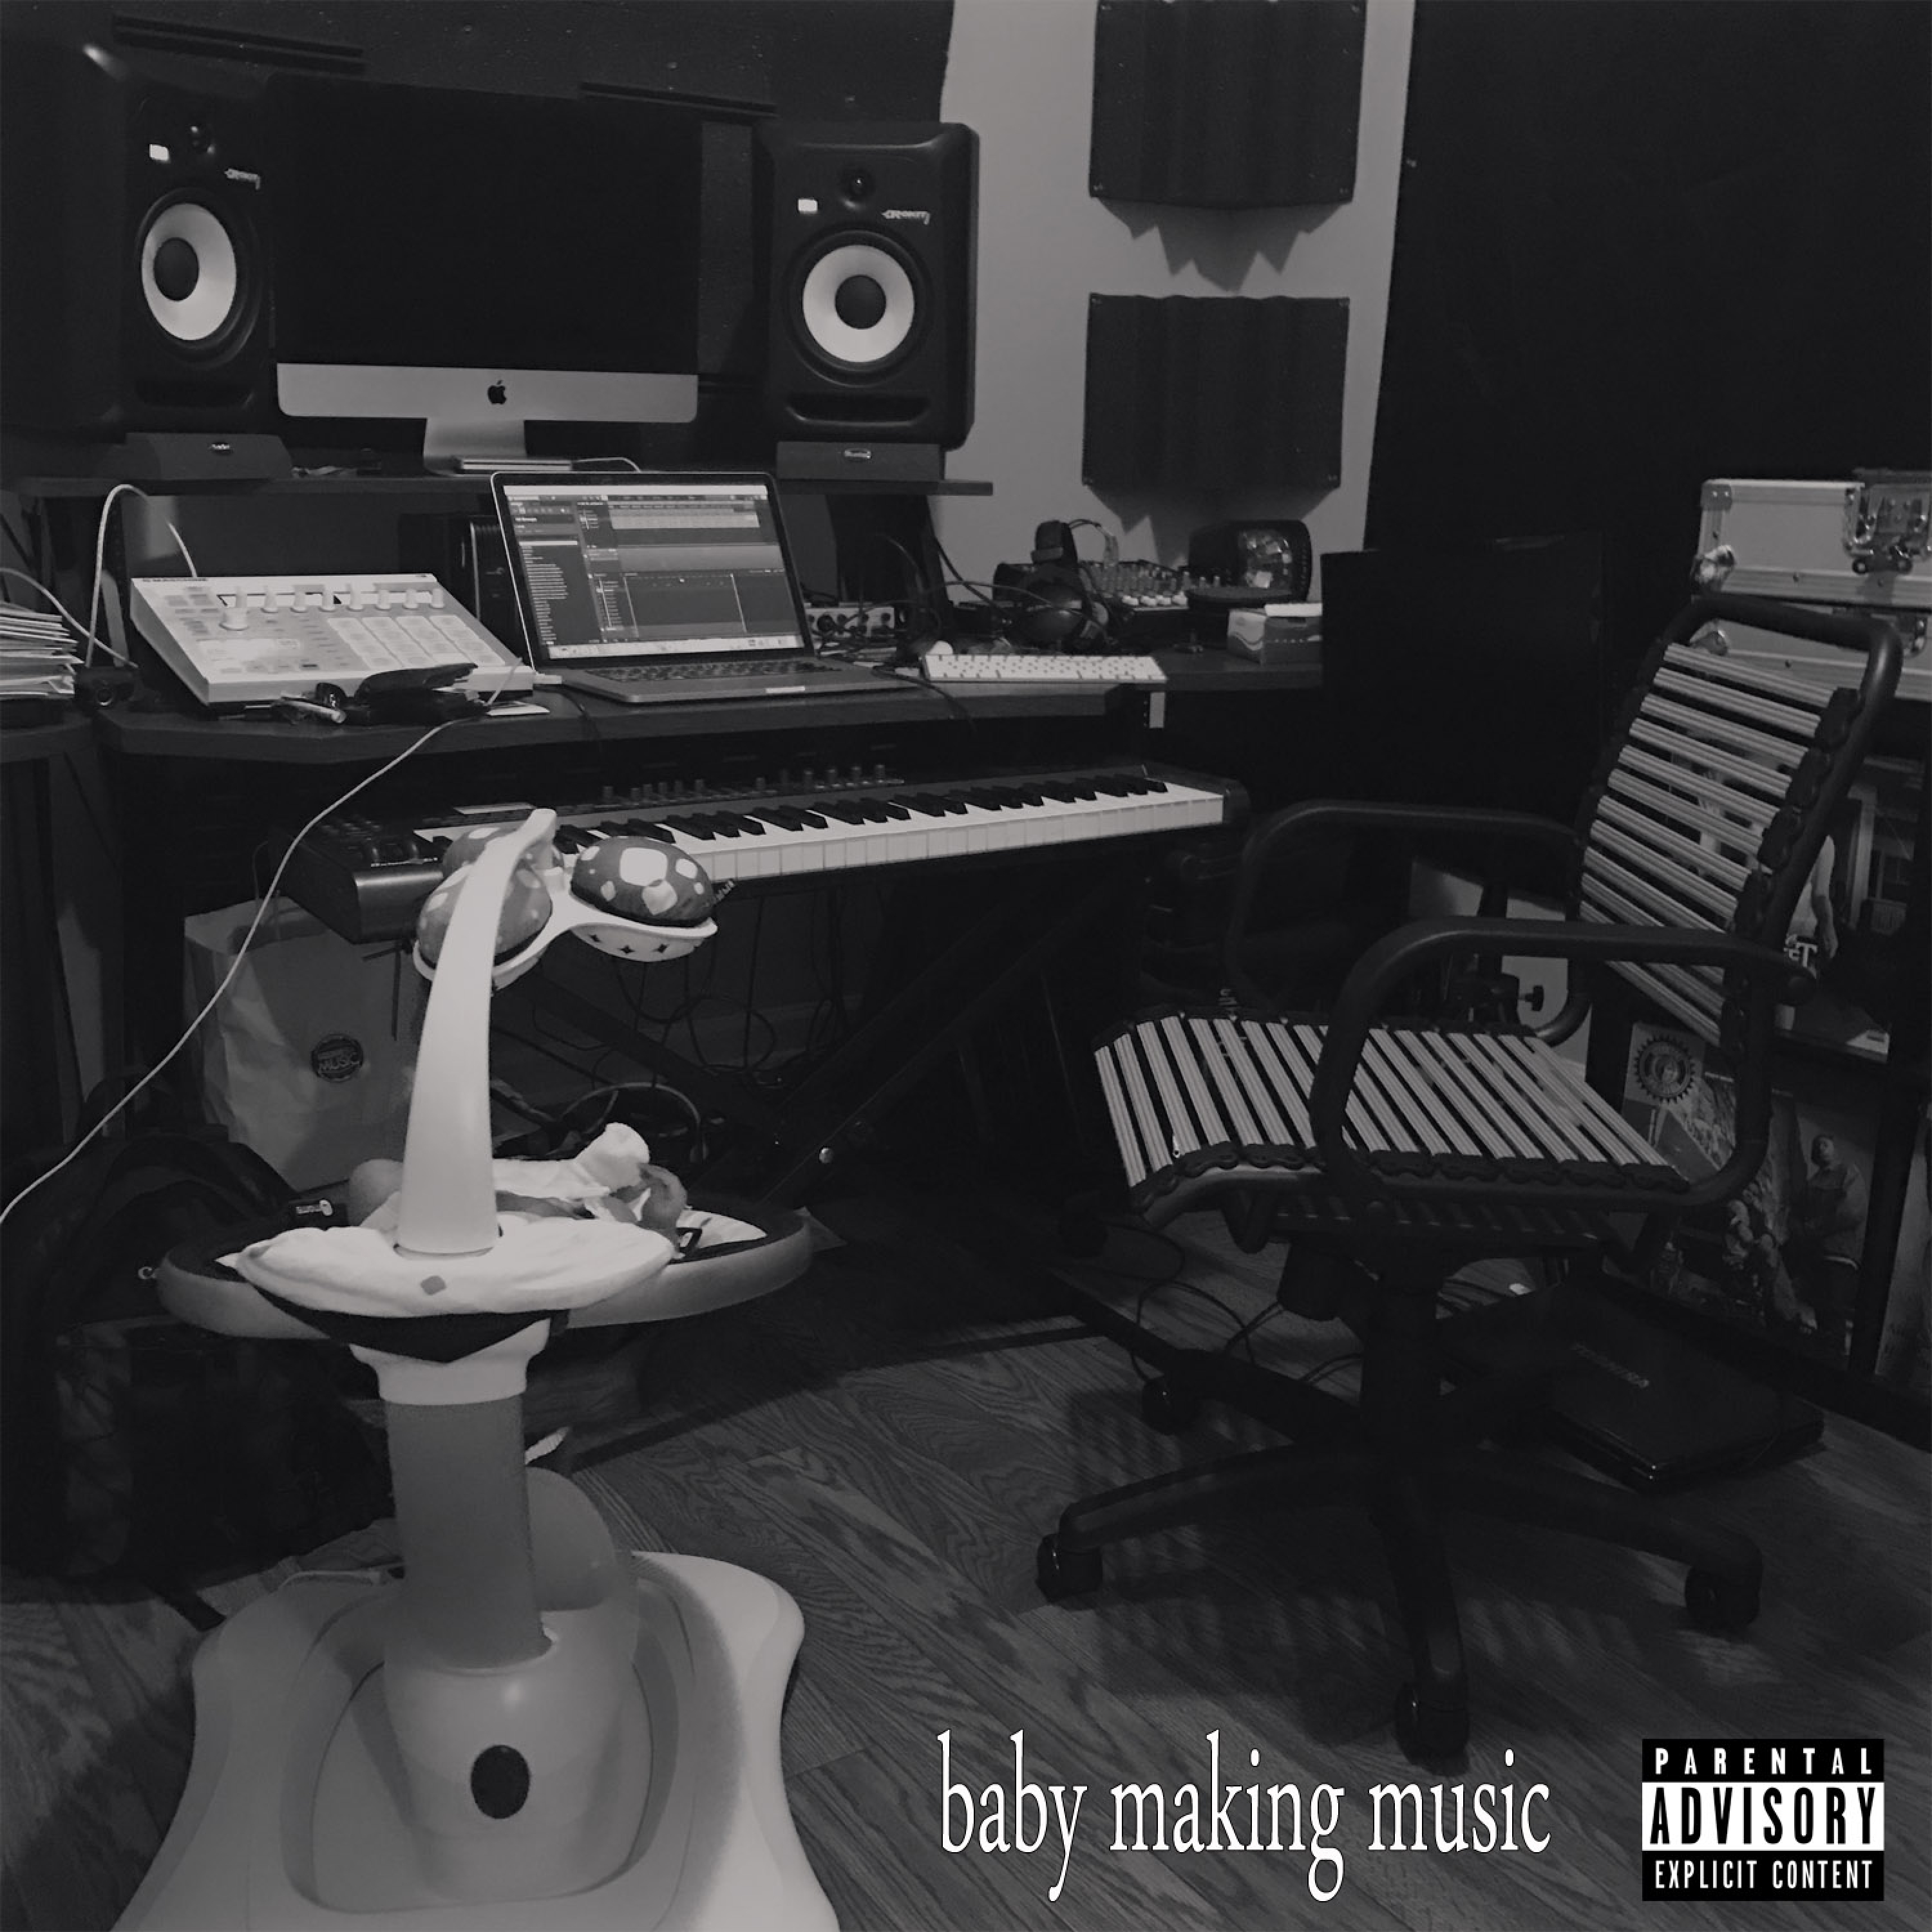 Baby Making Music